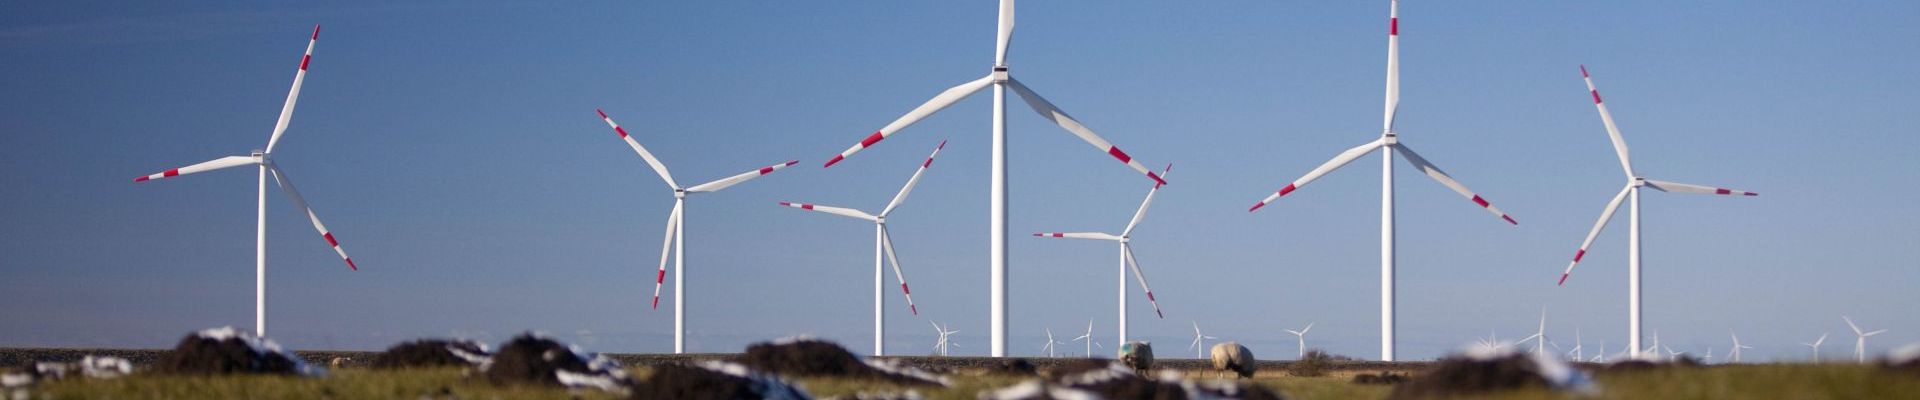 Windpark in Deutschland liefert Systemdienstleistungen durch Virtuelles Kraftwerk